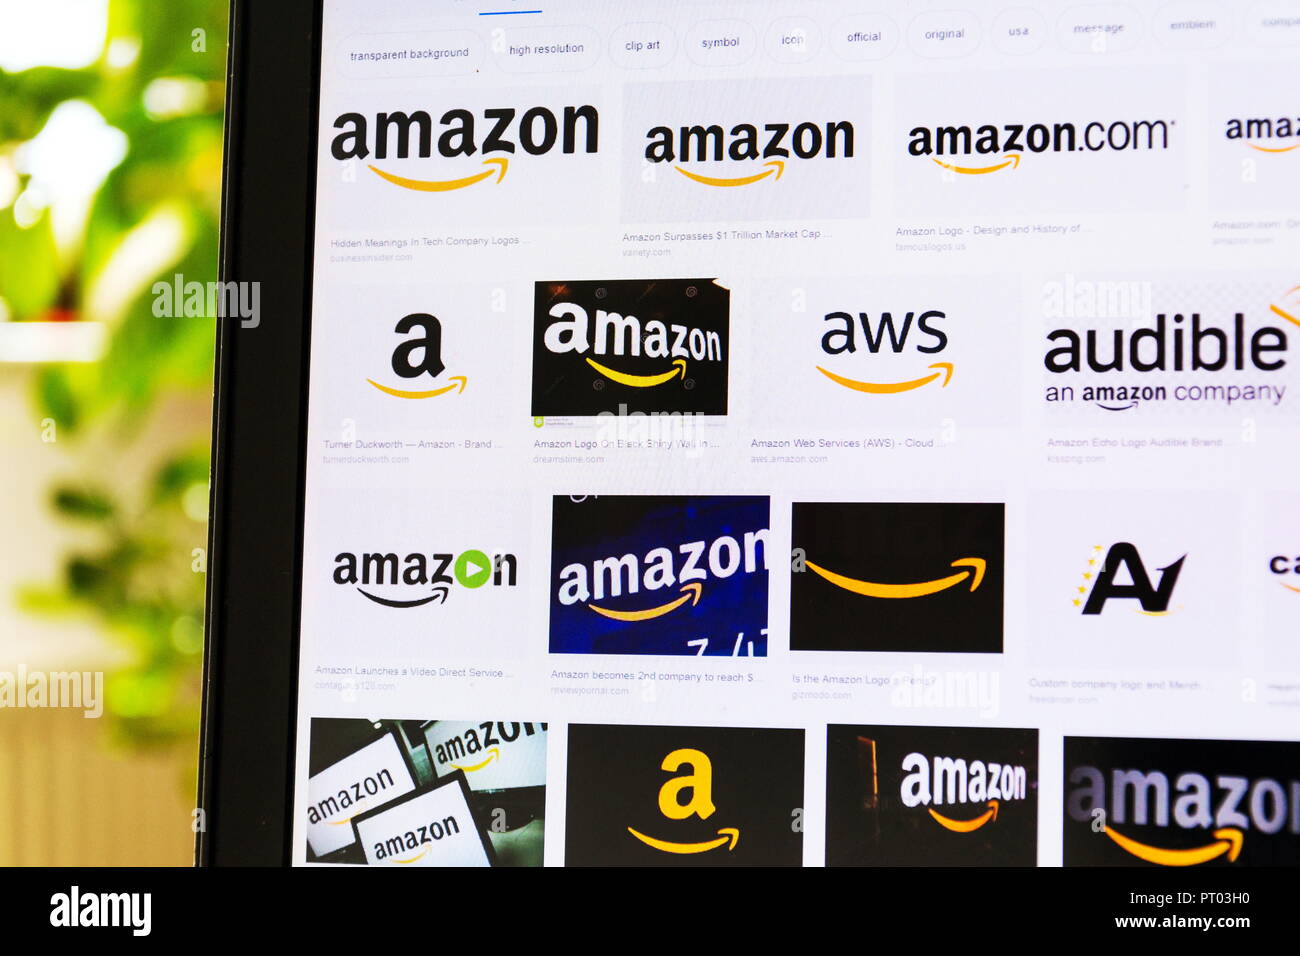 Praga, República Checa - 4 de octubre 2018: Varios Amazon comercio electrónico y cloud computing tecnología americana los logotipos de la compañía Foto de stock